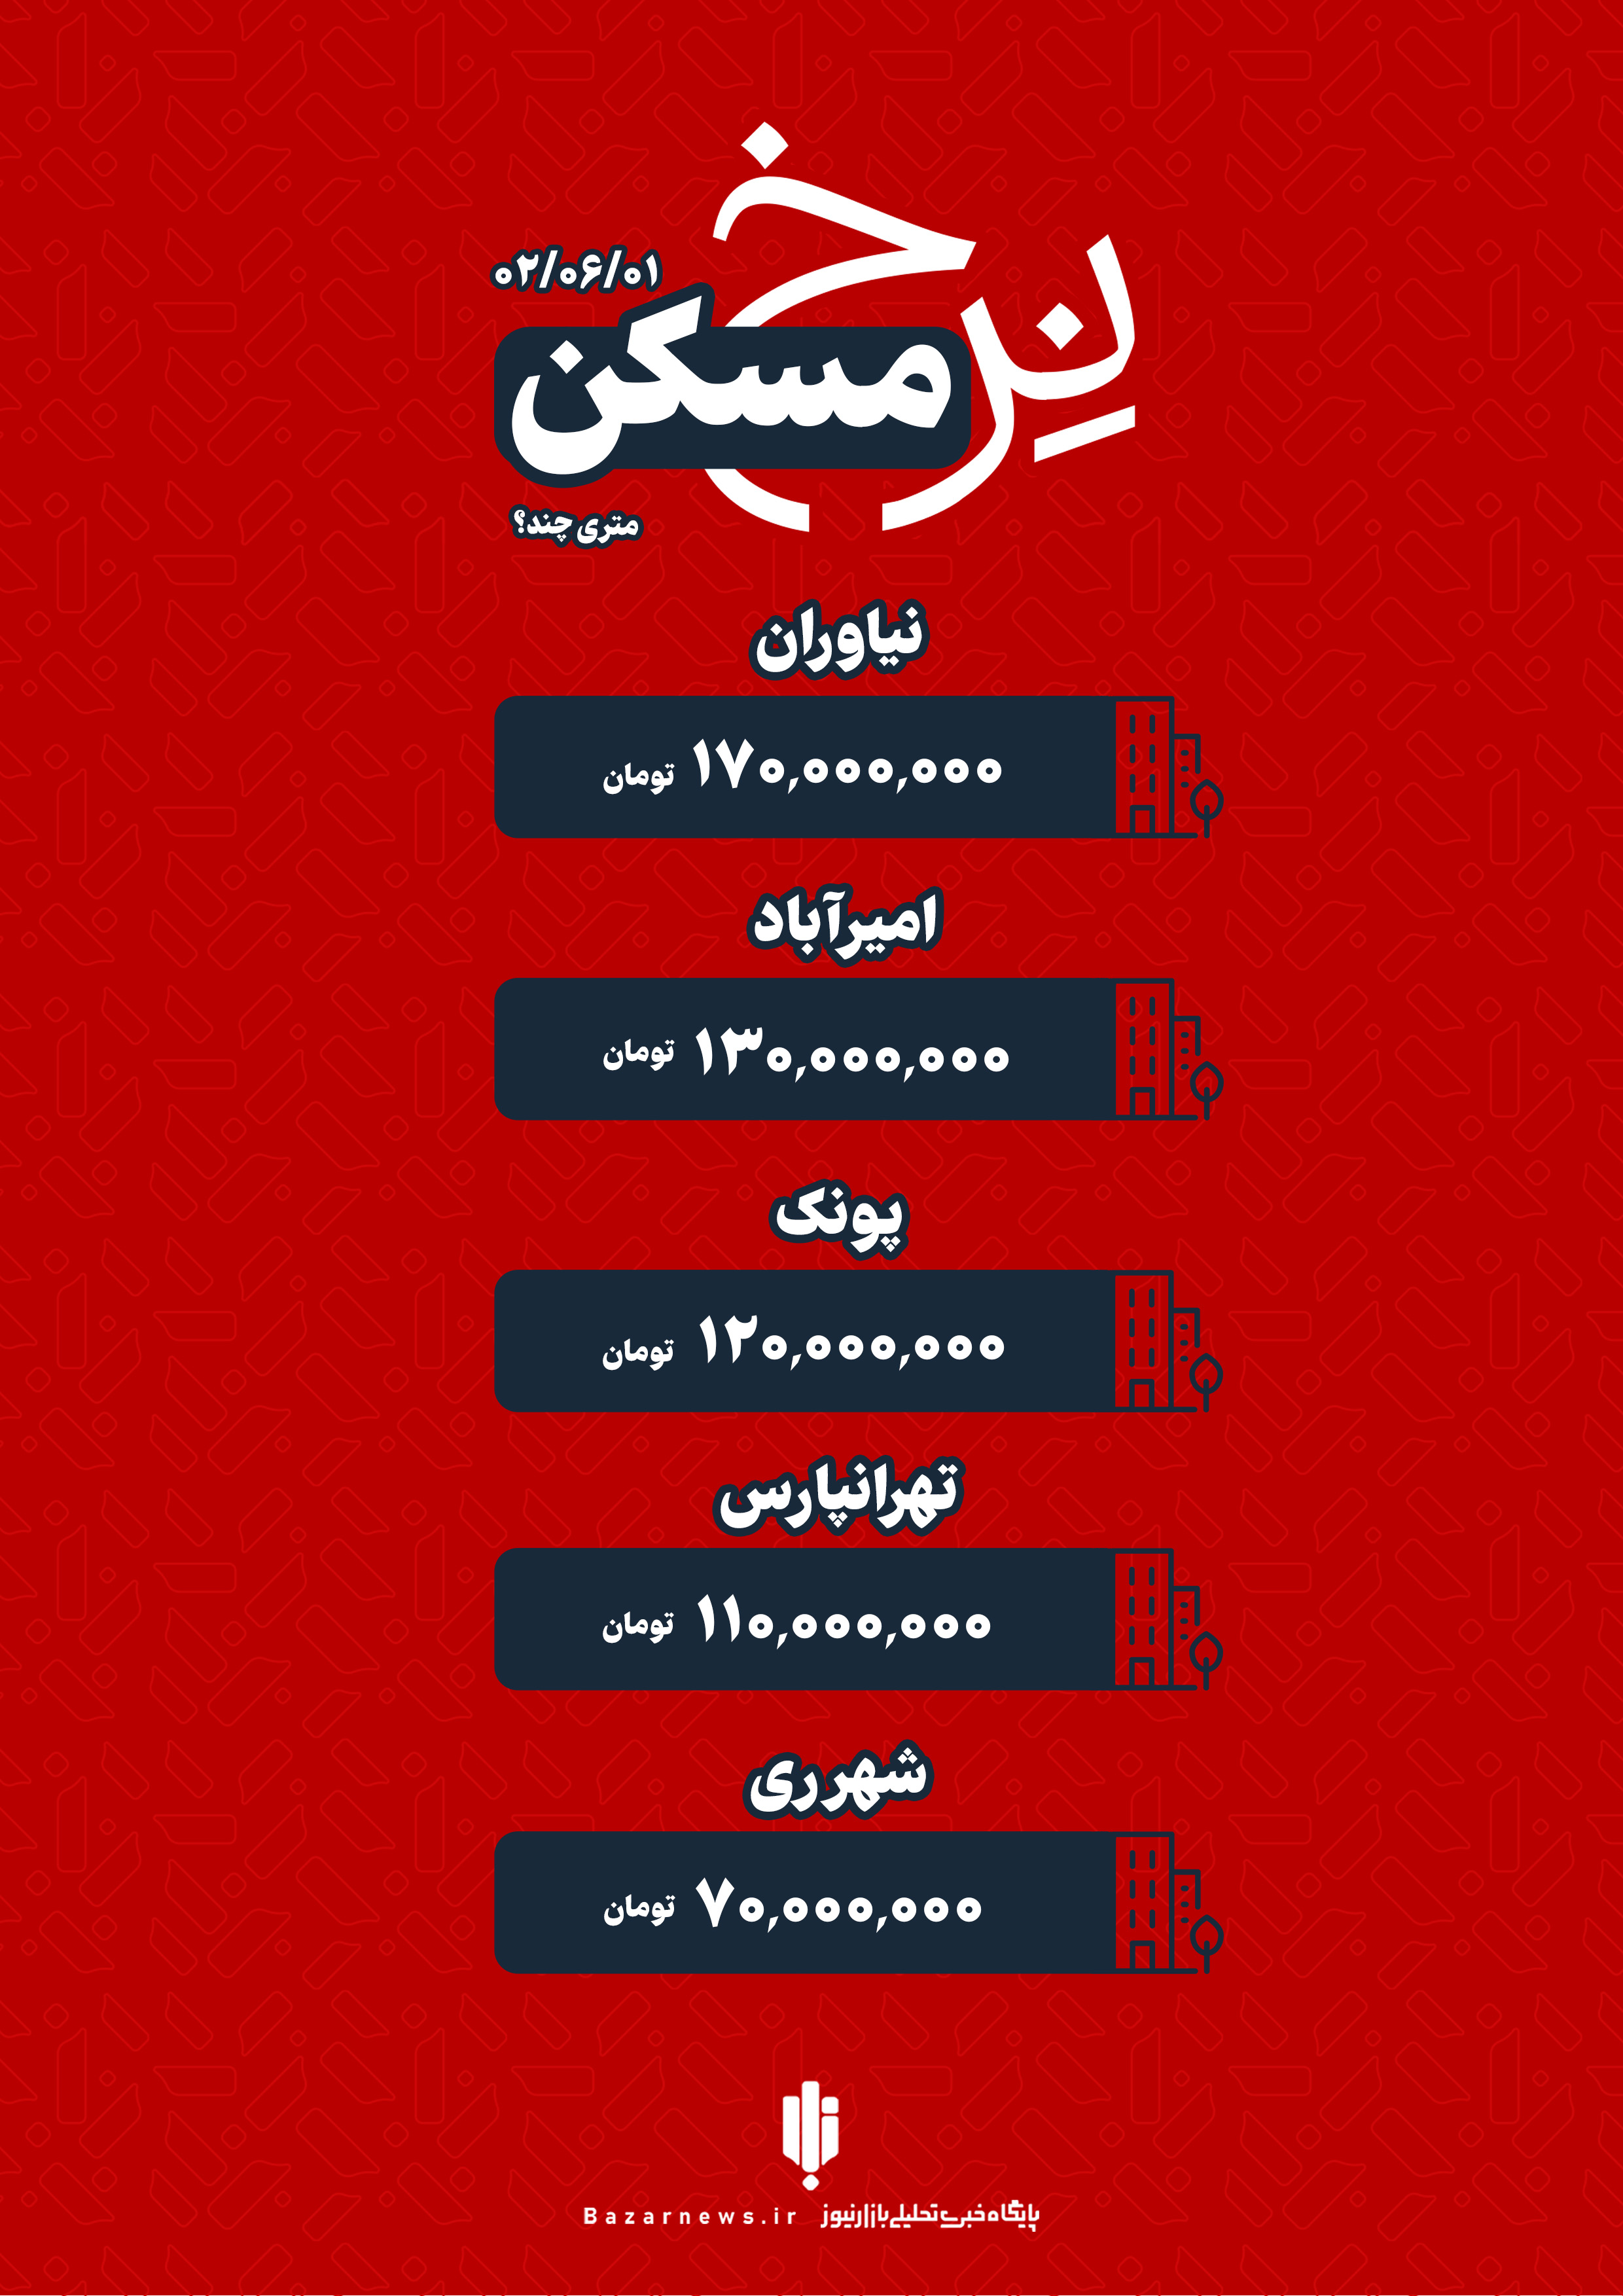 قیمت خانه در تهران چهارشنبه ۱ شهریور+اینفوگرافیک